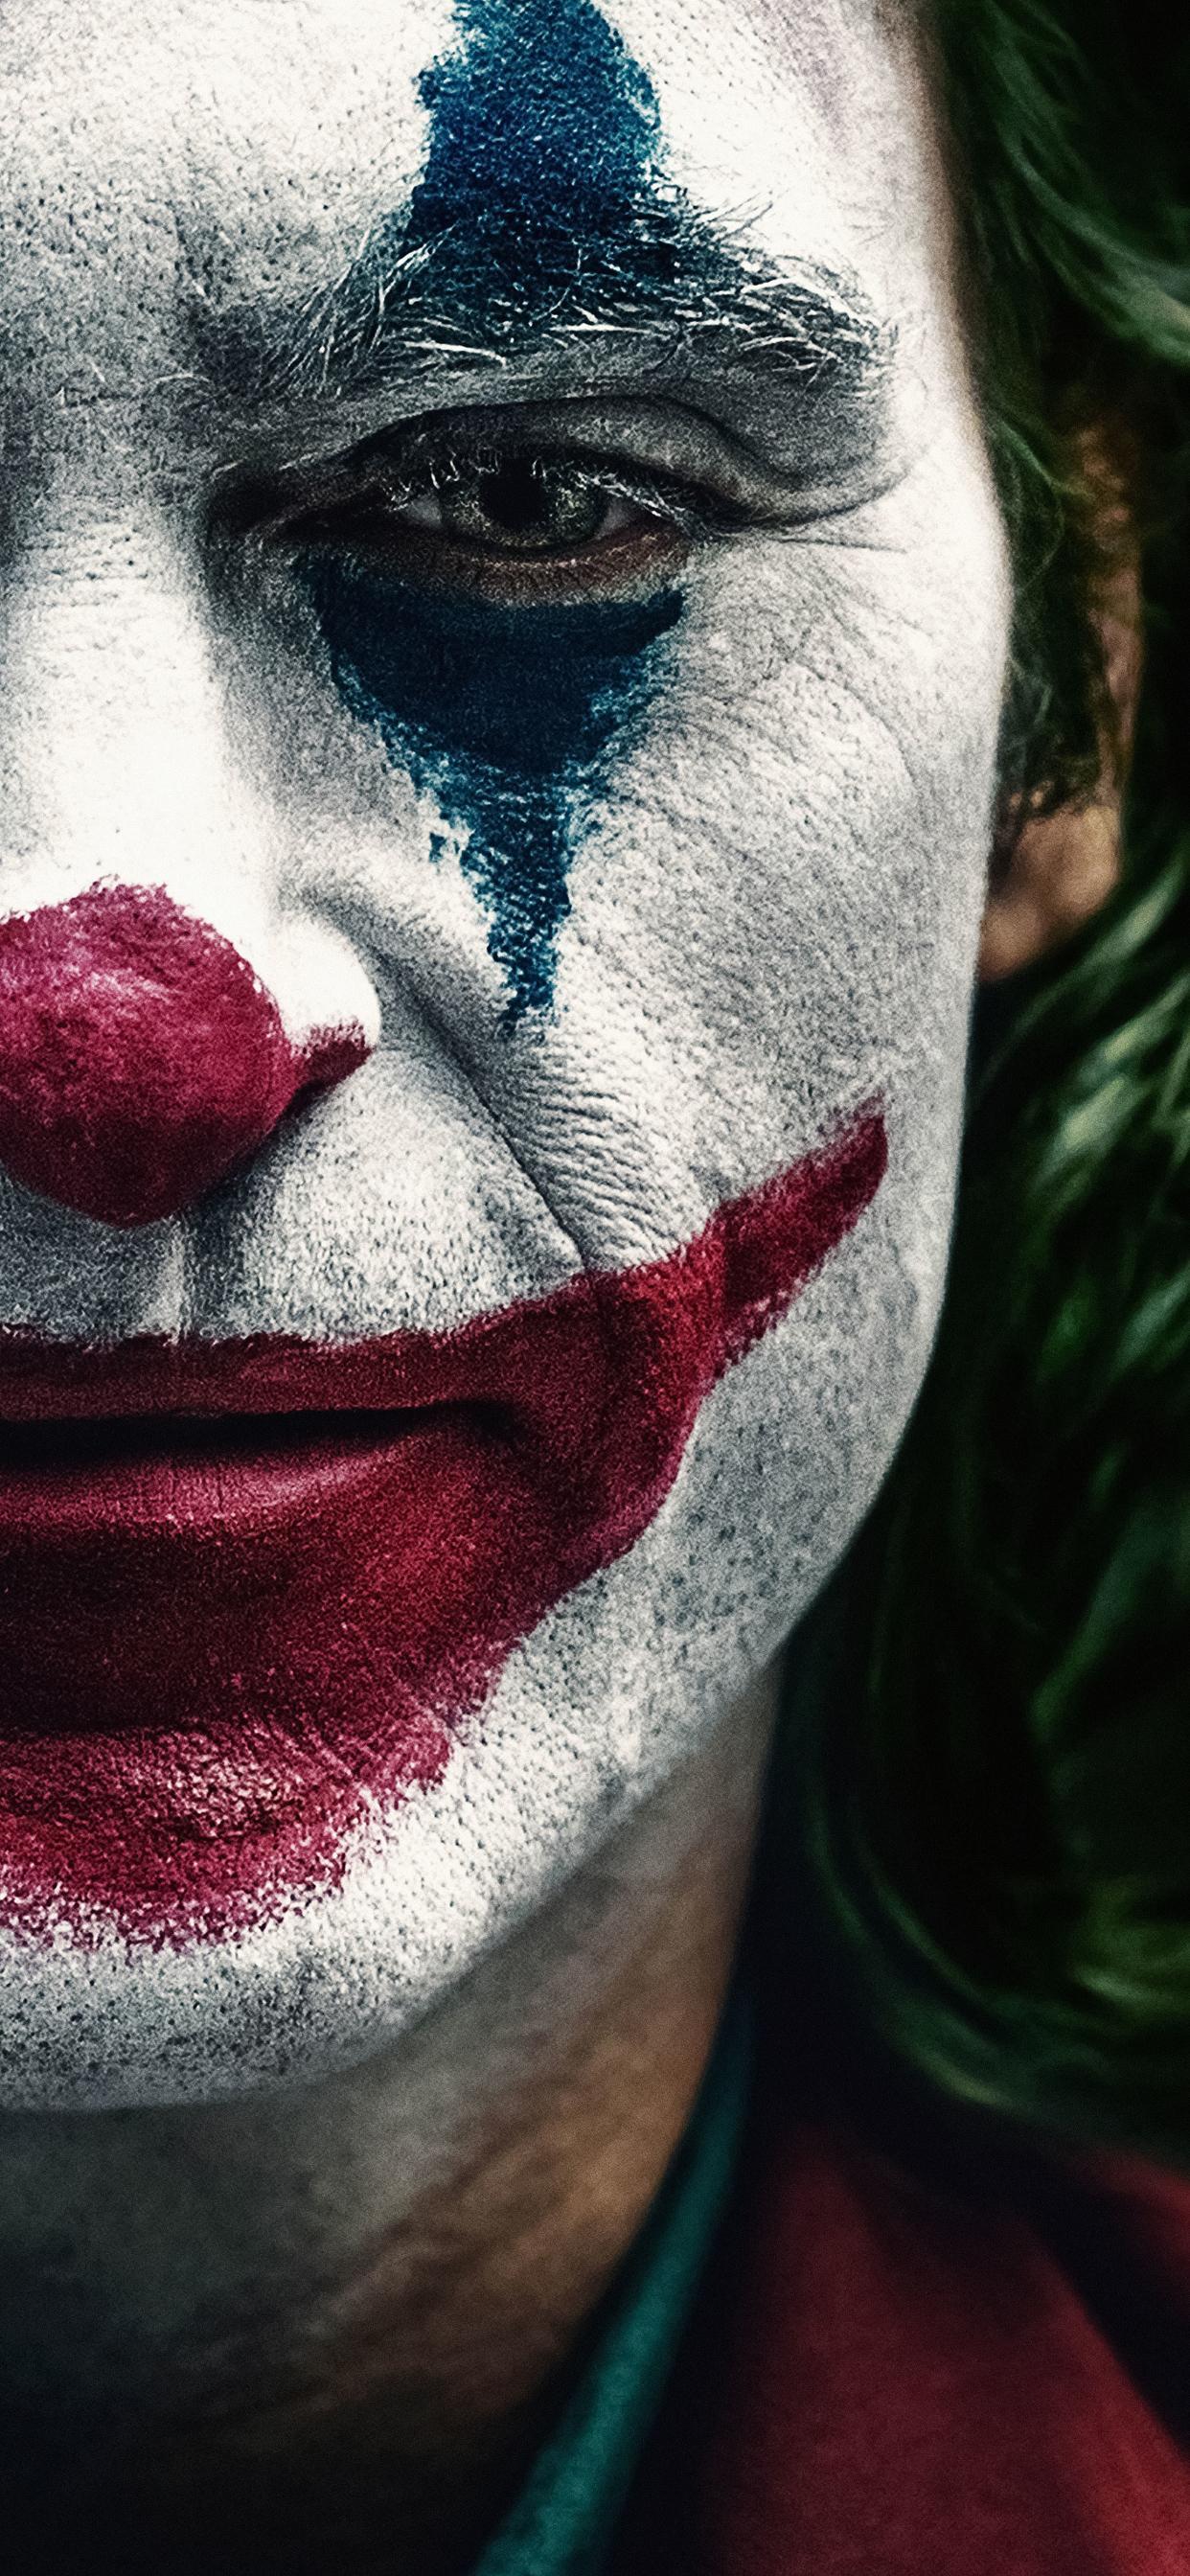 Joker 2019 iPhone XS MAX Wallpaper, HD Movies 4K